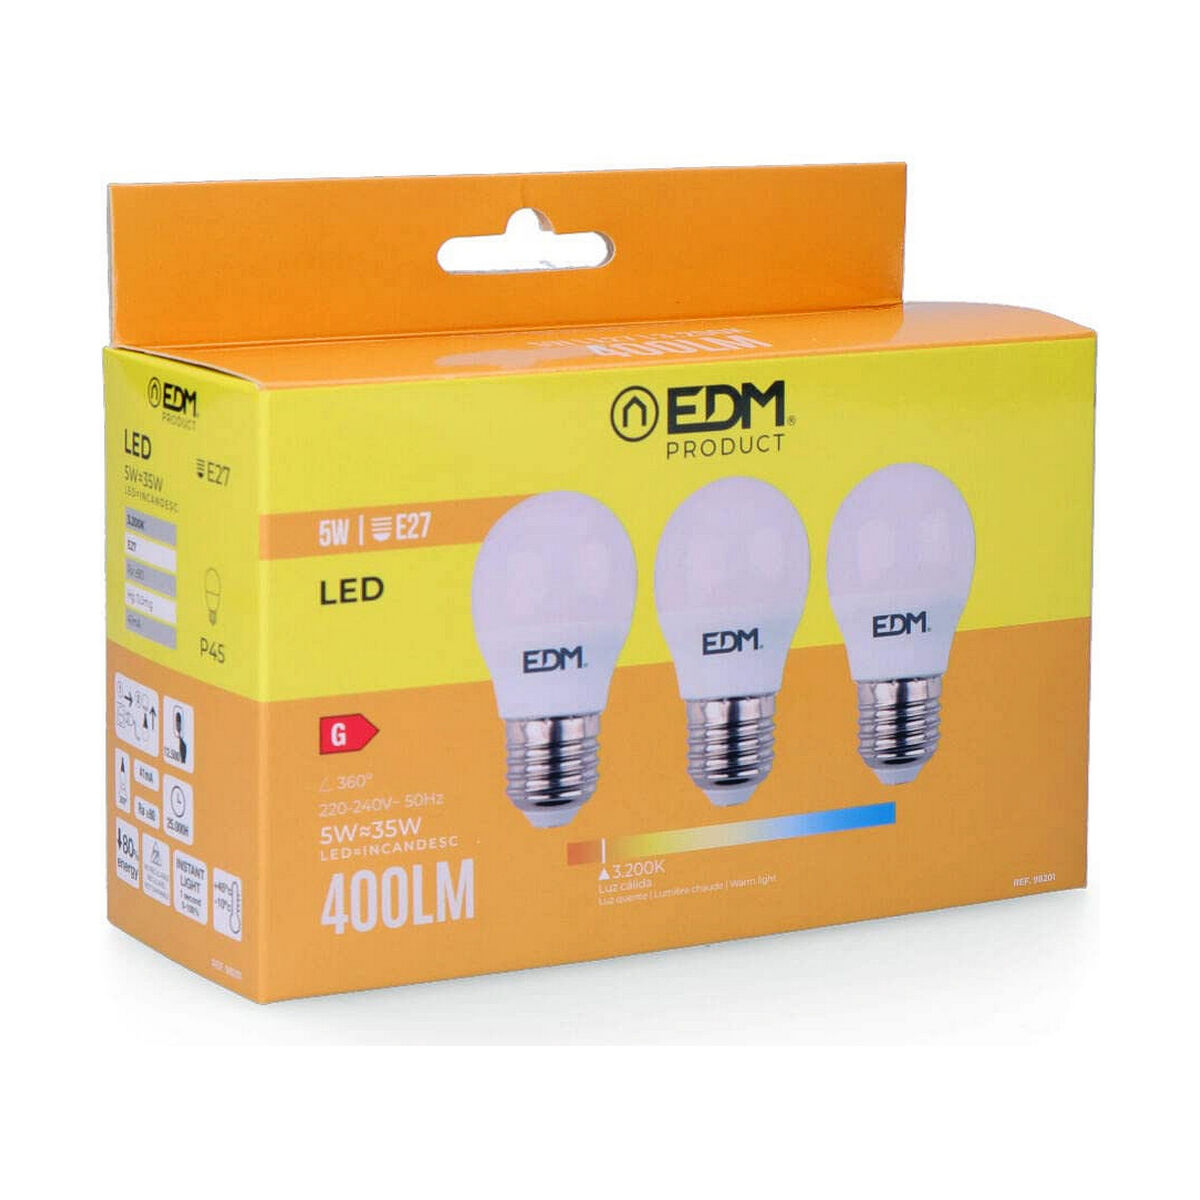 Lampadina LED EDM E27 5 W G (3200 K)